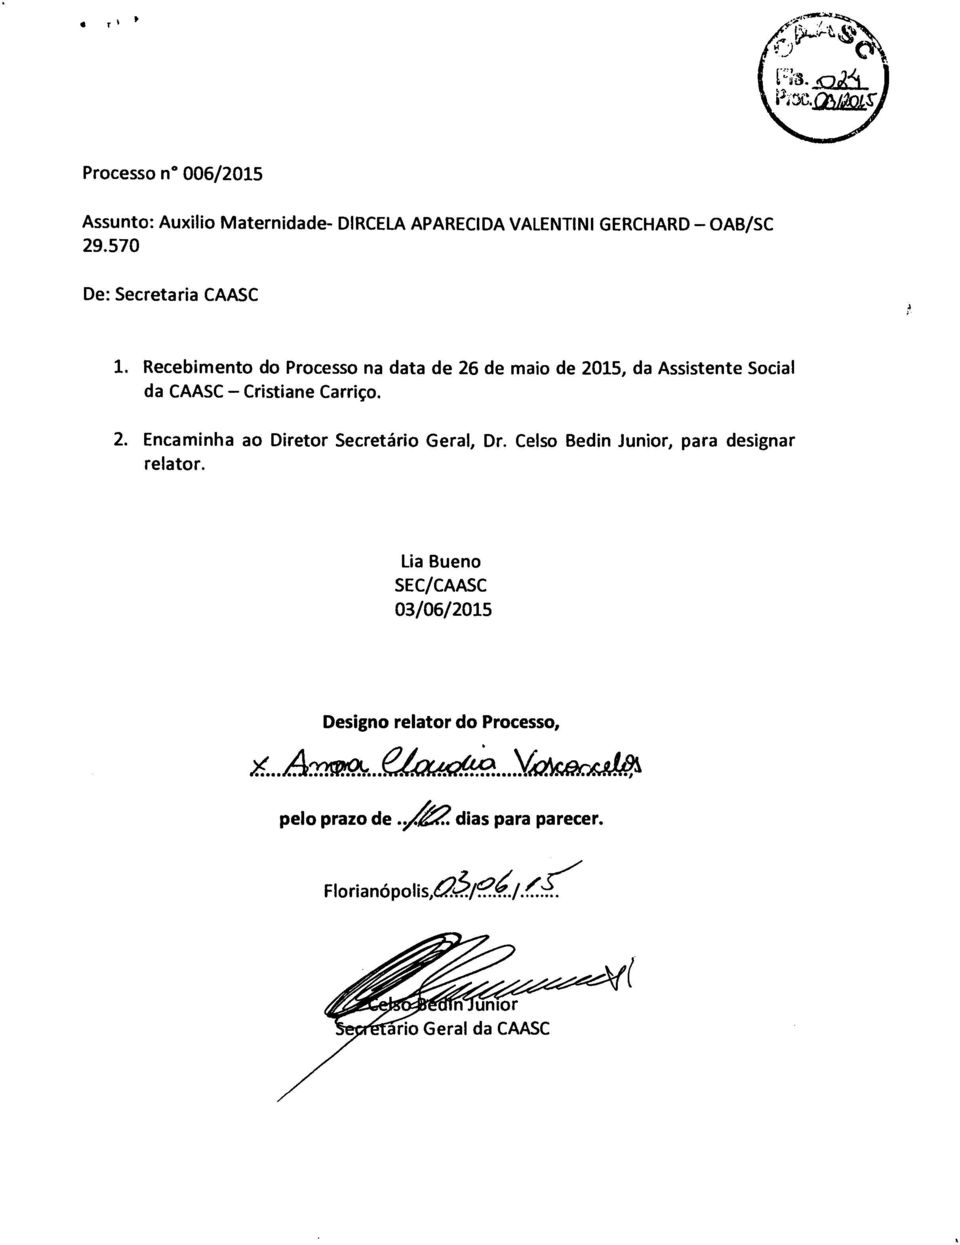 Recebimento do Processo na data de 26 de maio de 2015, da Assistente Social da CAASC Cristiane Carriço. 2. Encaminha ao Diretor Secretário Geral, Dr.